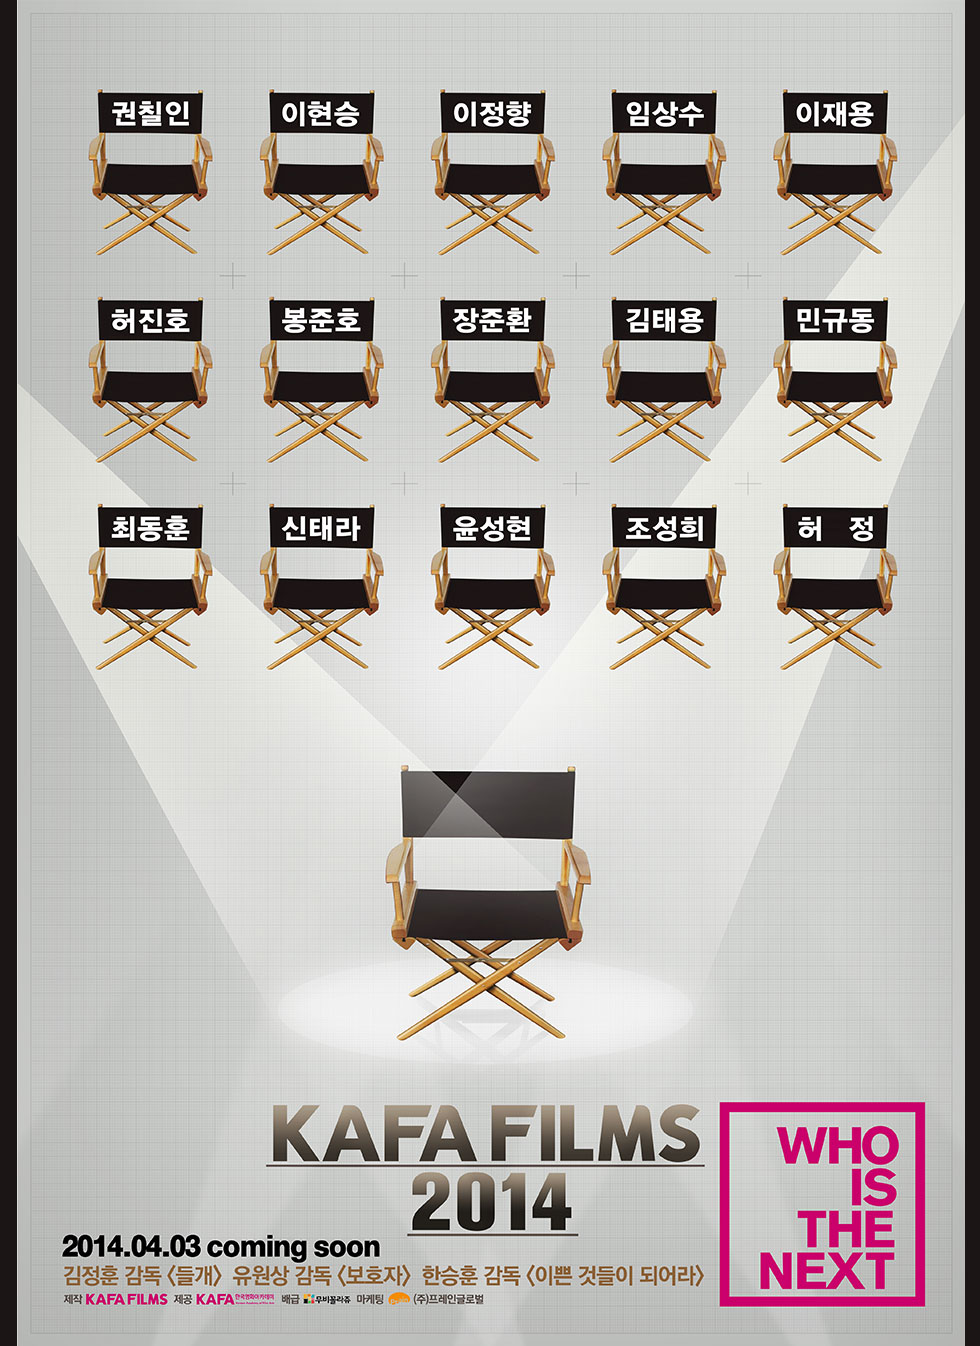 무비꼴라쥬와 함께하는 KAFA FILMS 2014 얼리버드 예매 이벤트